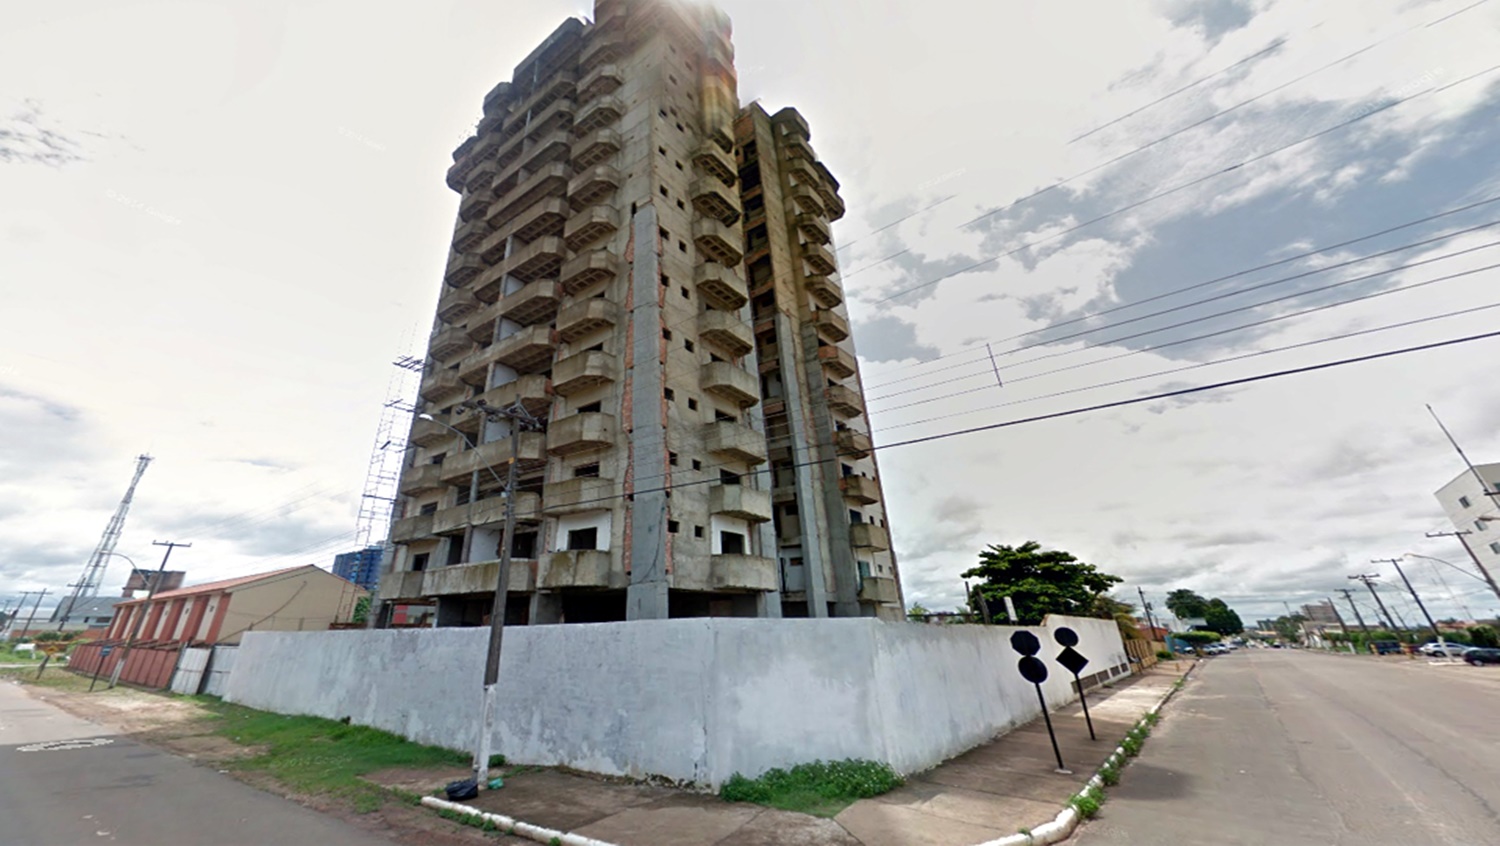 HERDEIROS: Suspensa pela Justiça a demolição do prédio do Aquarius Residence, na capital